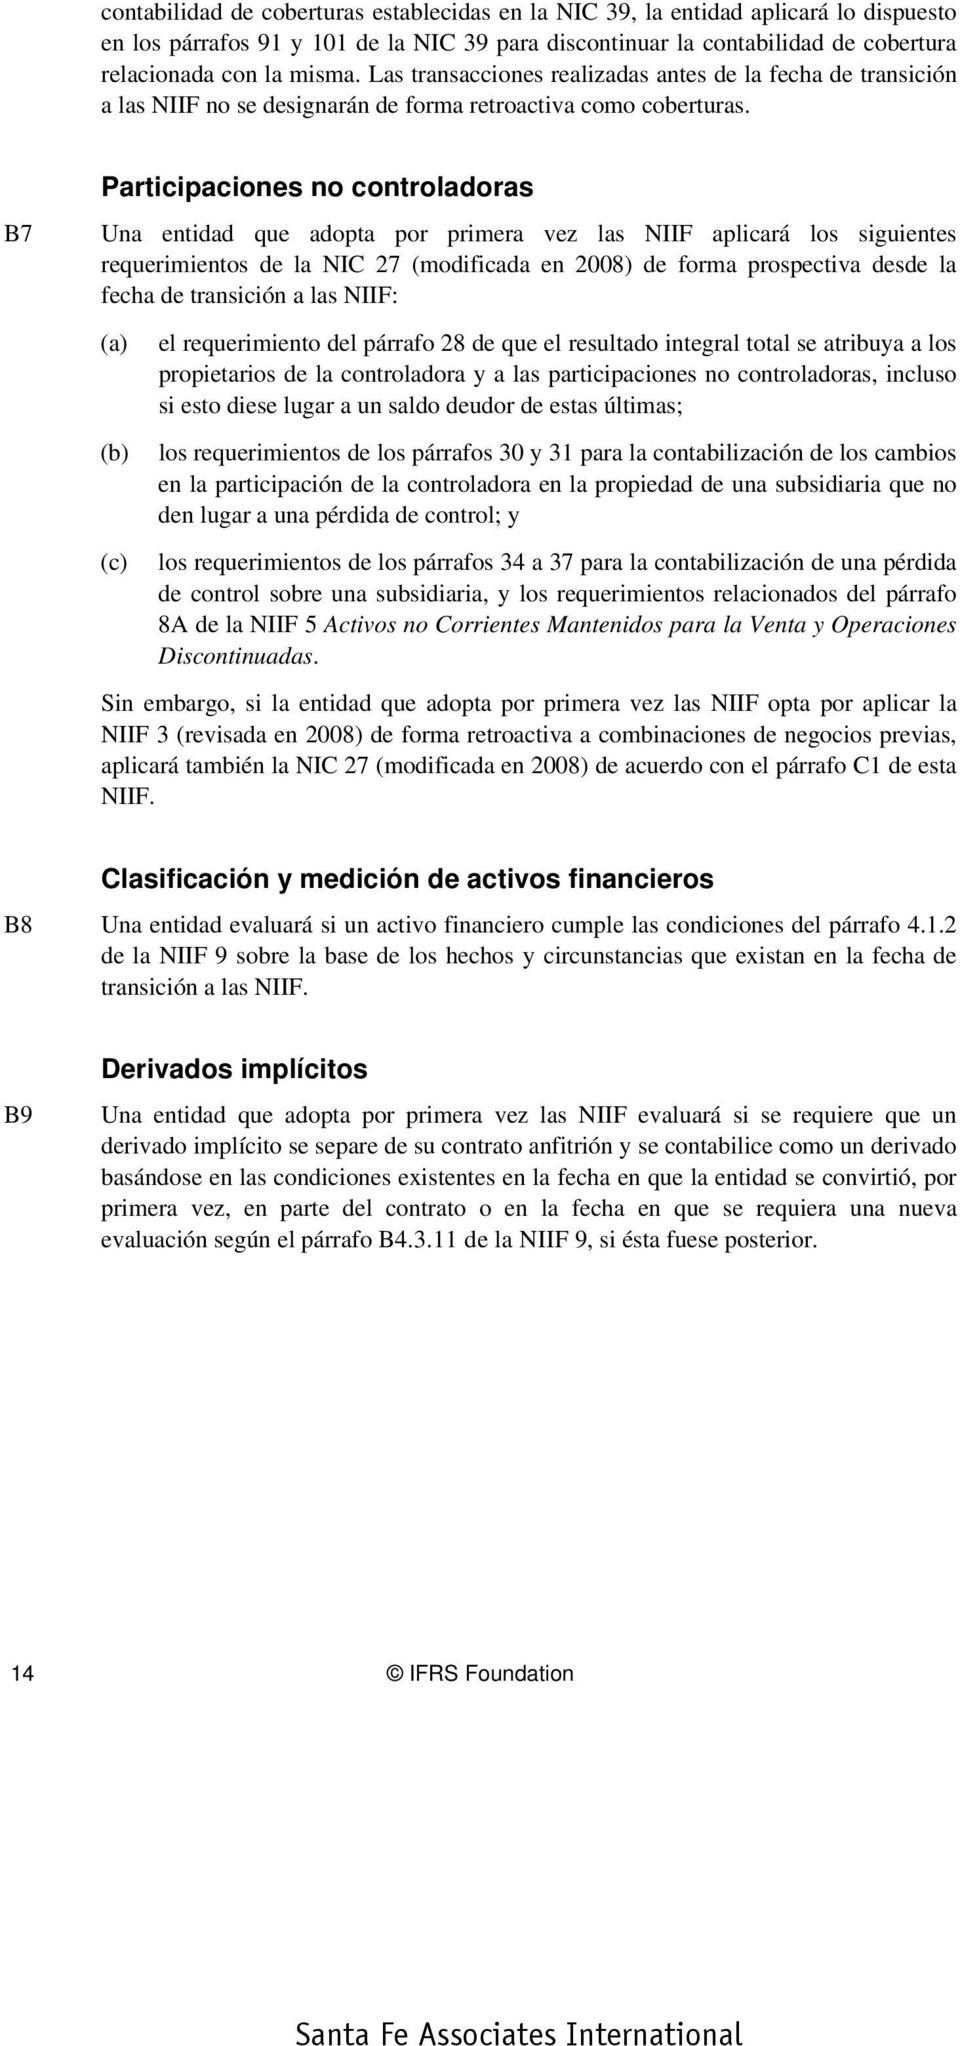 B7 Participaciones no controladoras Una entidad que adopta por primera vez las NIIF aplicará los siguientes requerimientos de la NIC 27 (modificada en 2008) de forma prospectiva desde la fecha de